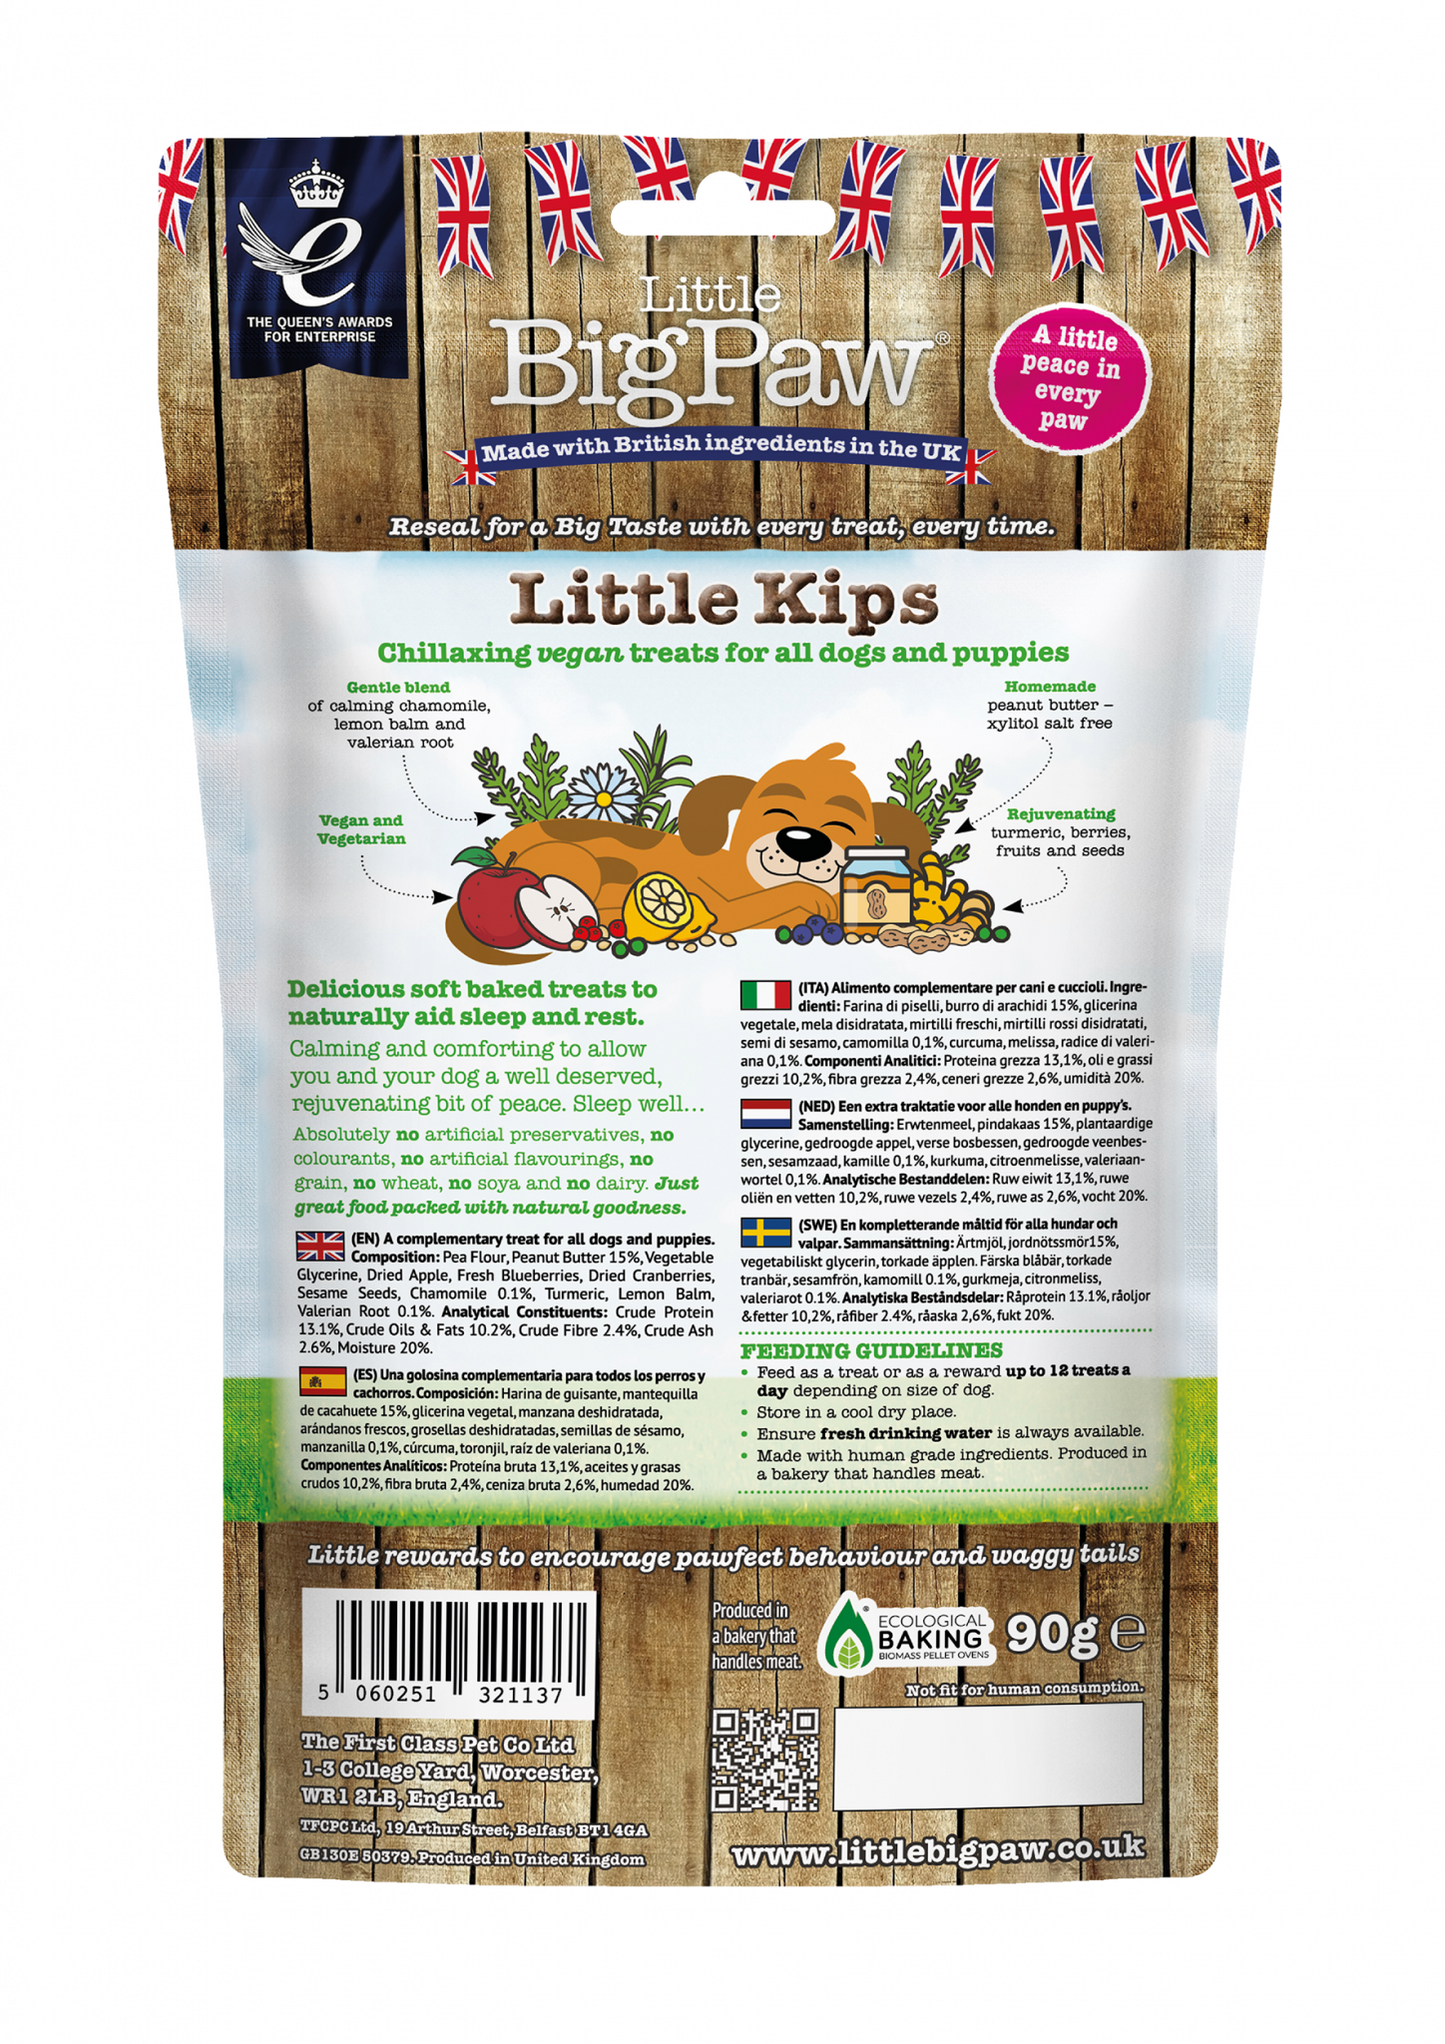 Little BigPaw Little Kips Chillaxing Vegan Treats for Dogs